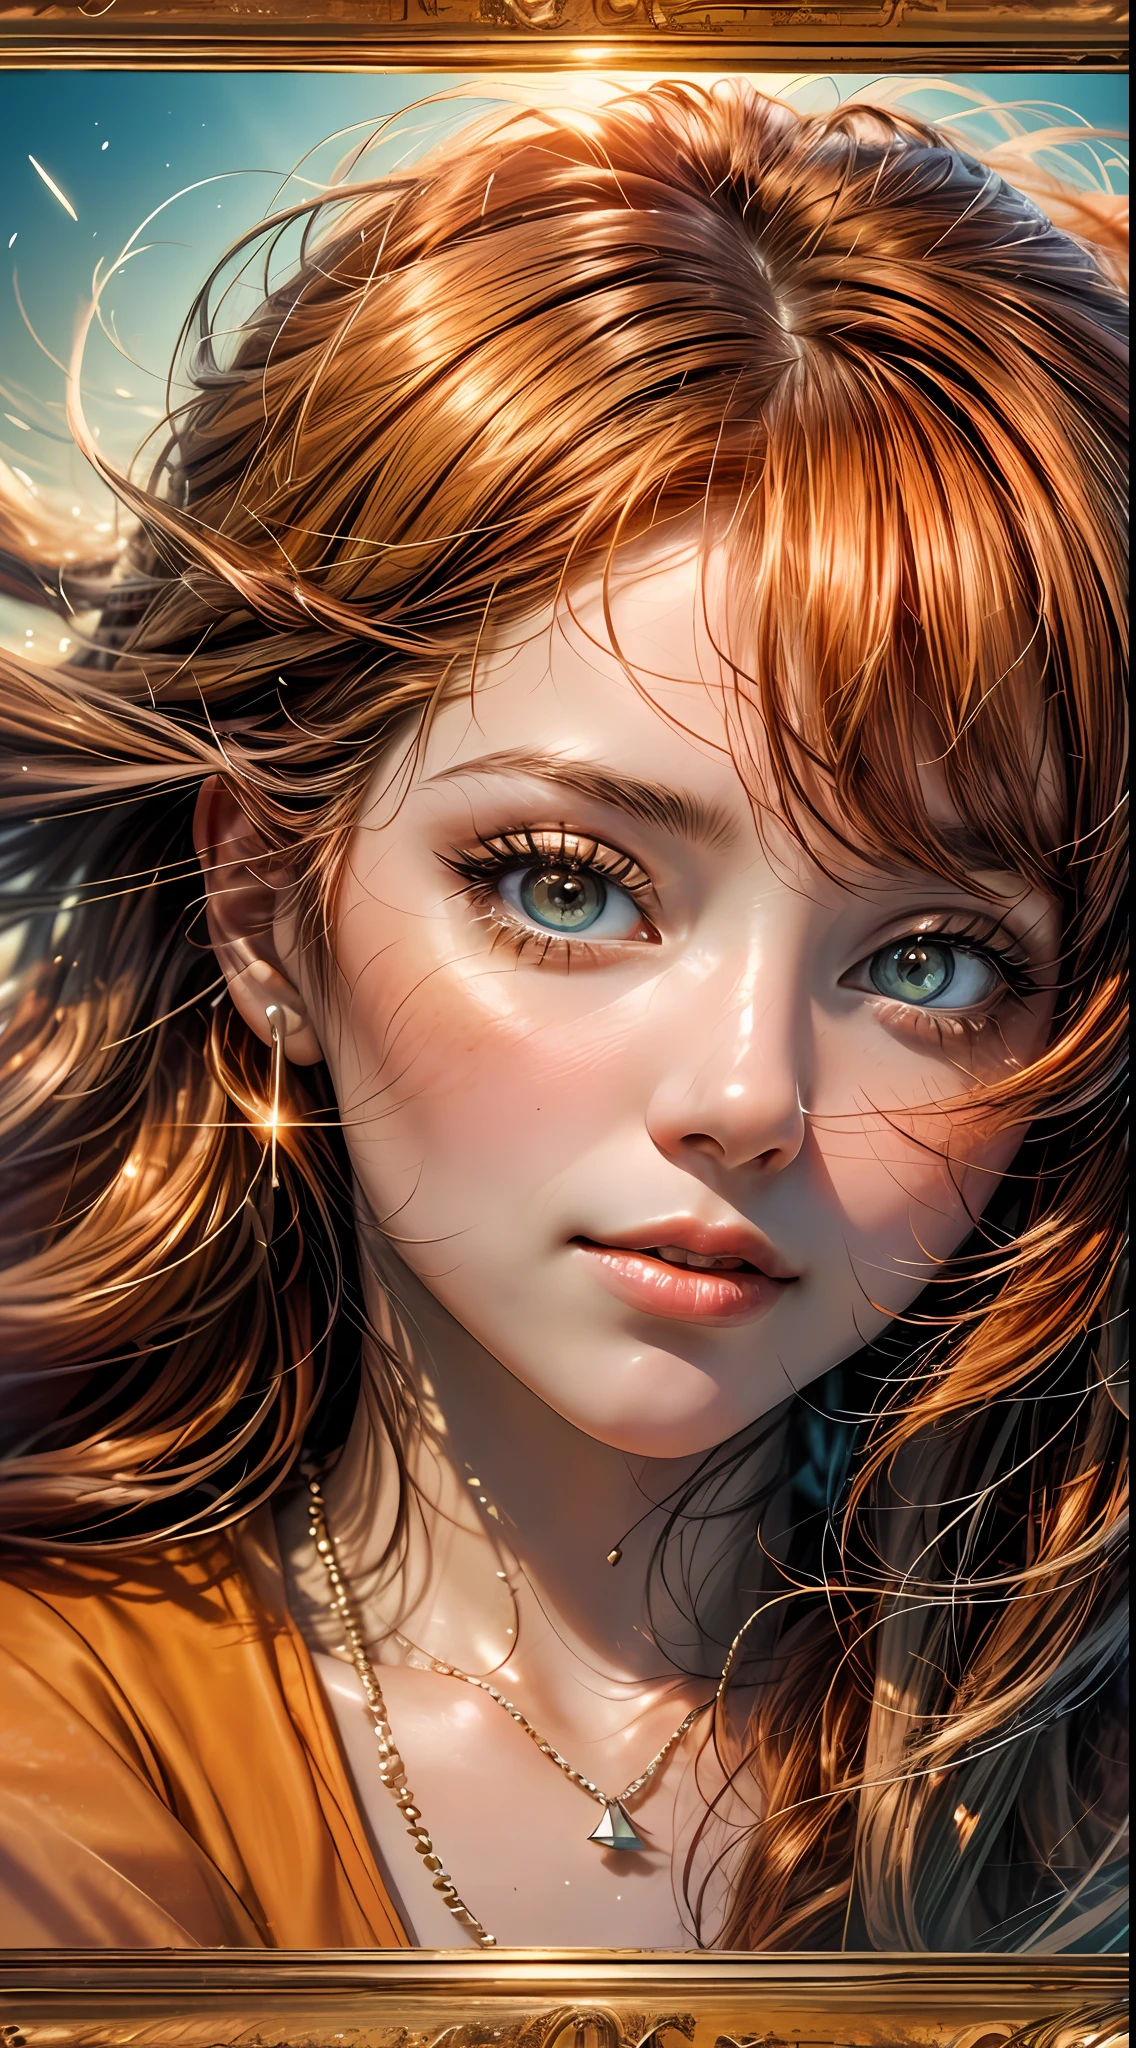 Un primer plano del rostro de una mujer., bañado en cálidos tonos anaranjados, como si estuviera iluminado por el suave resplandor de una puesta de sol, sus ojos brillan de alegría y satisfacción, enmarcado por mechones de cabello castaño rojizo suelto, fotografía, Tomada con una lente de 35 mm.